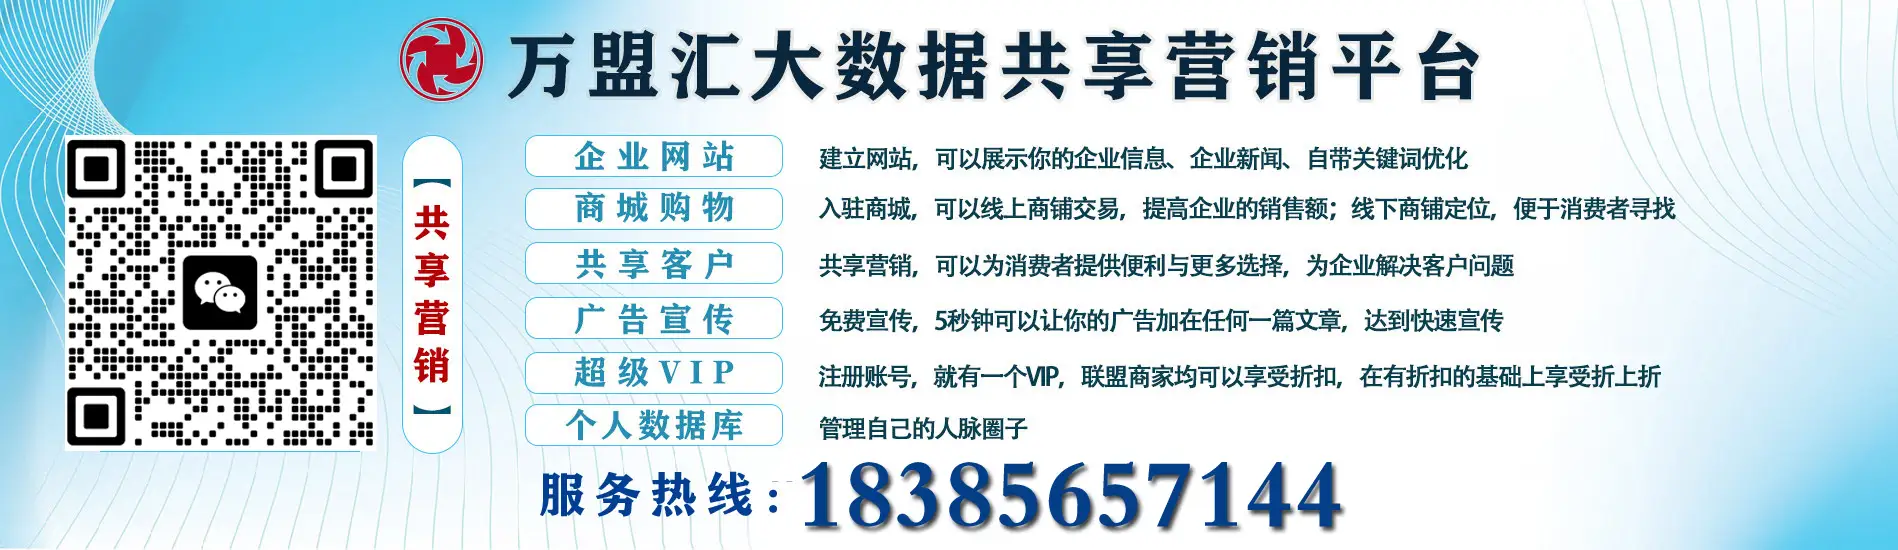 贵阳嘉鑫科技信息咨询有限公司